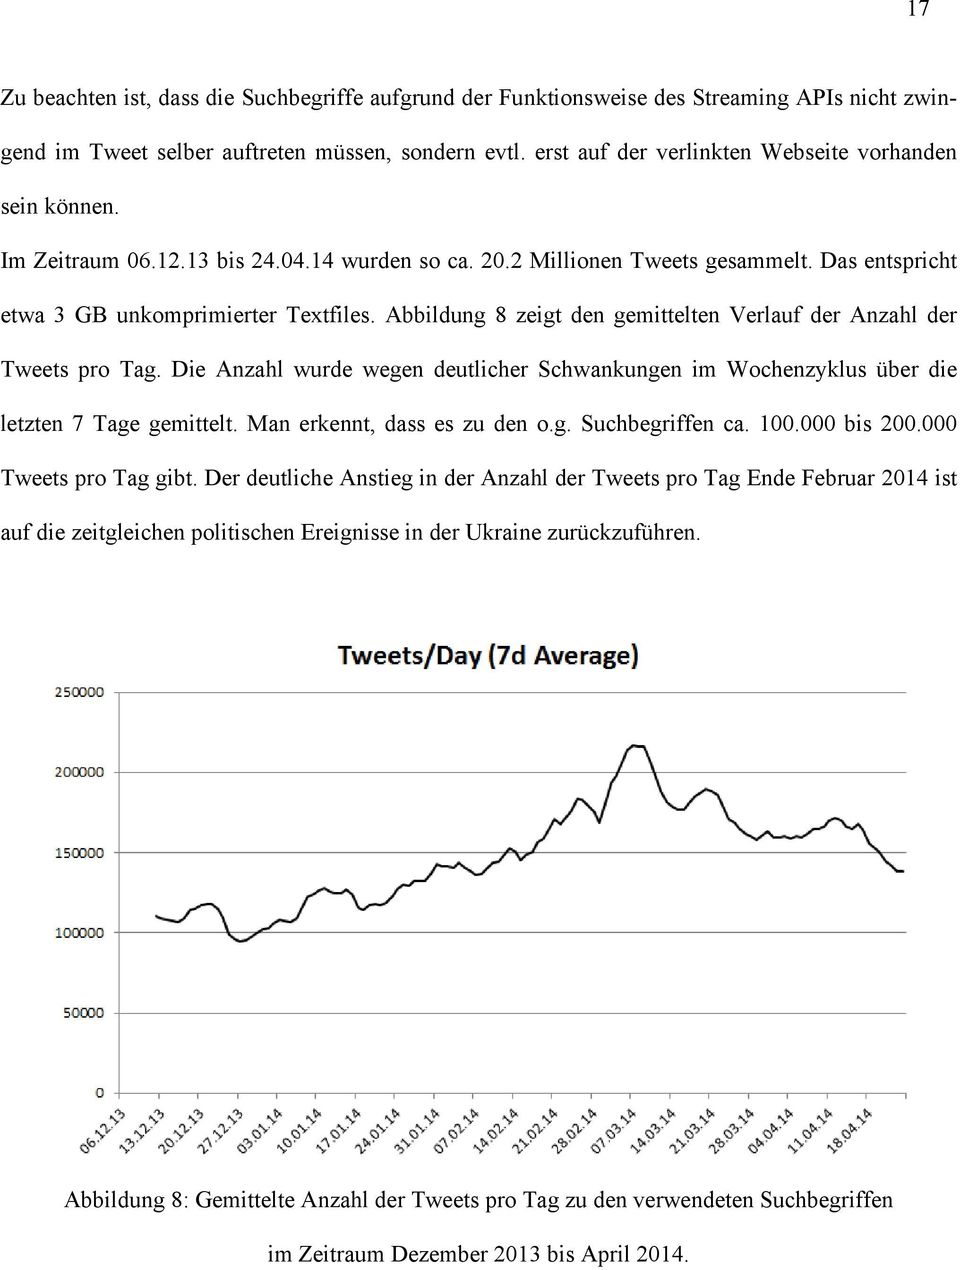 Abbildung 8 zeigt den gemittelten Verlauf der Anzahl der Tweets pro Tag. Die Anzahl wurde wegen deutlicher Schwankungen im Wochenzyklus über die letzten 7 Tage gemittelt.